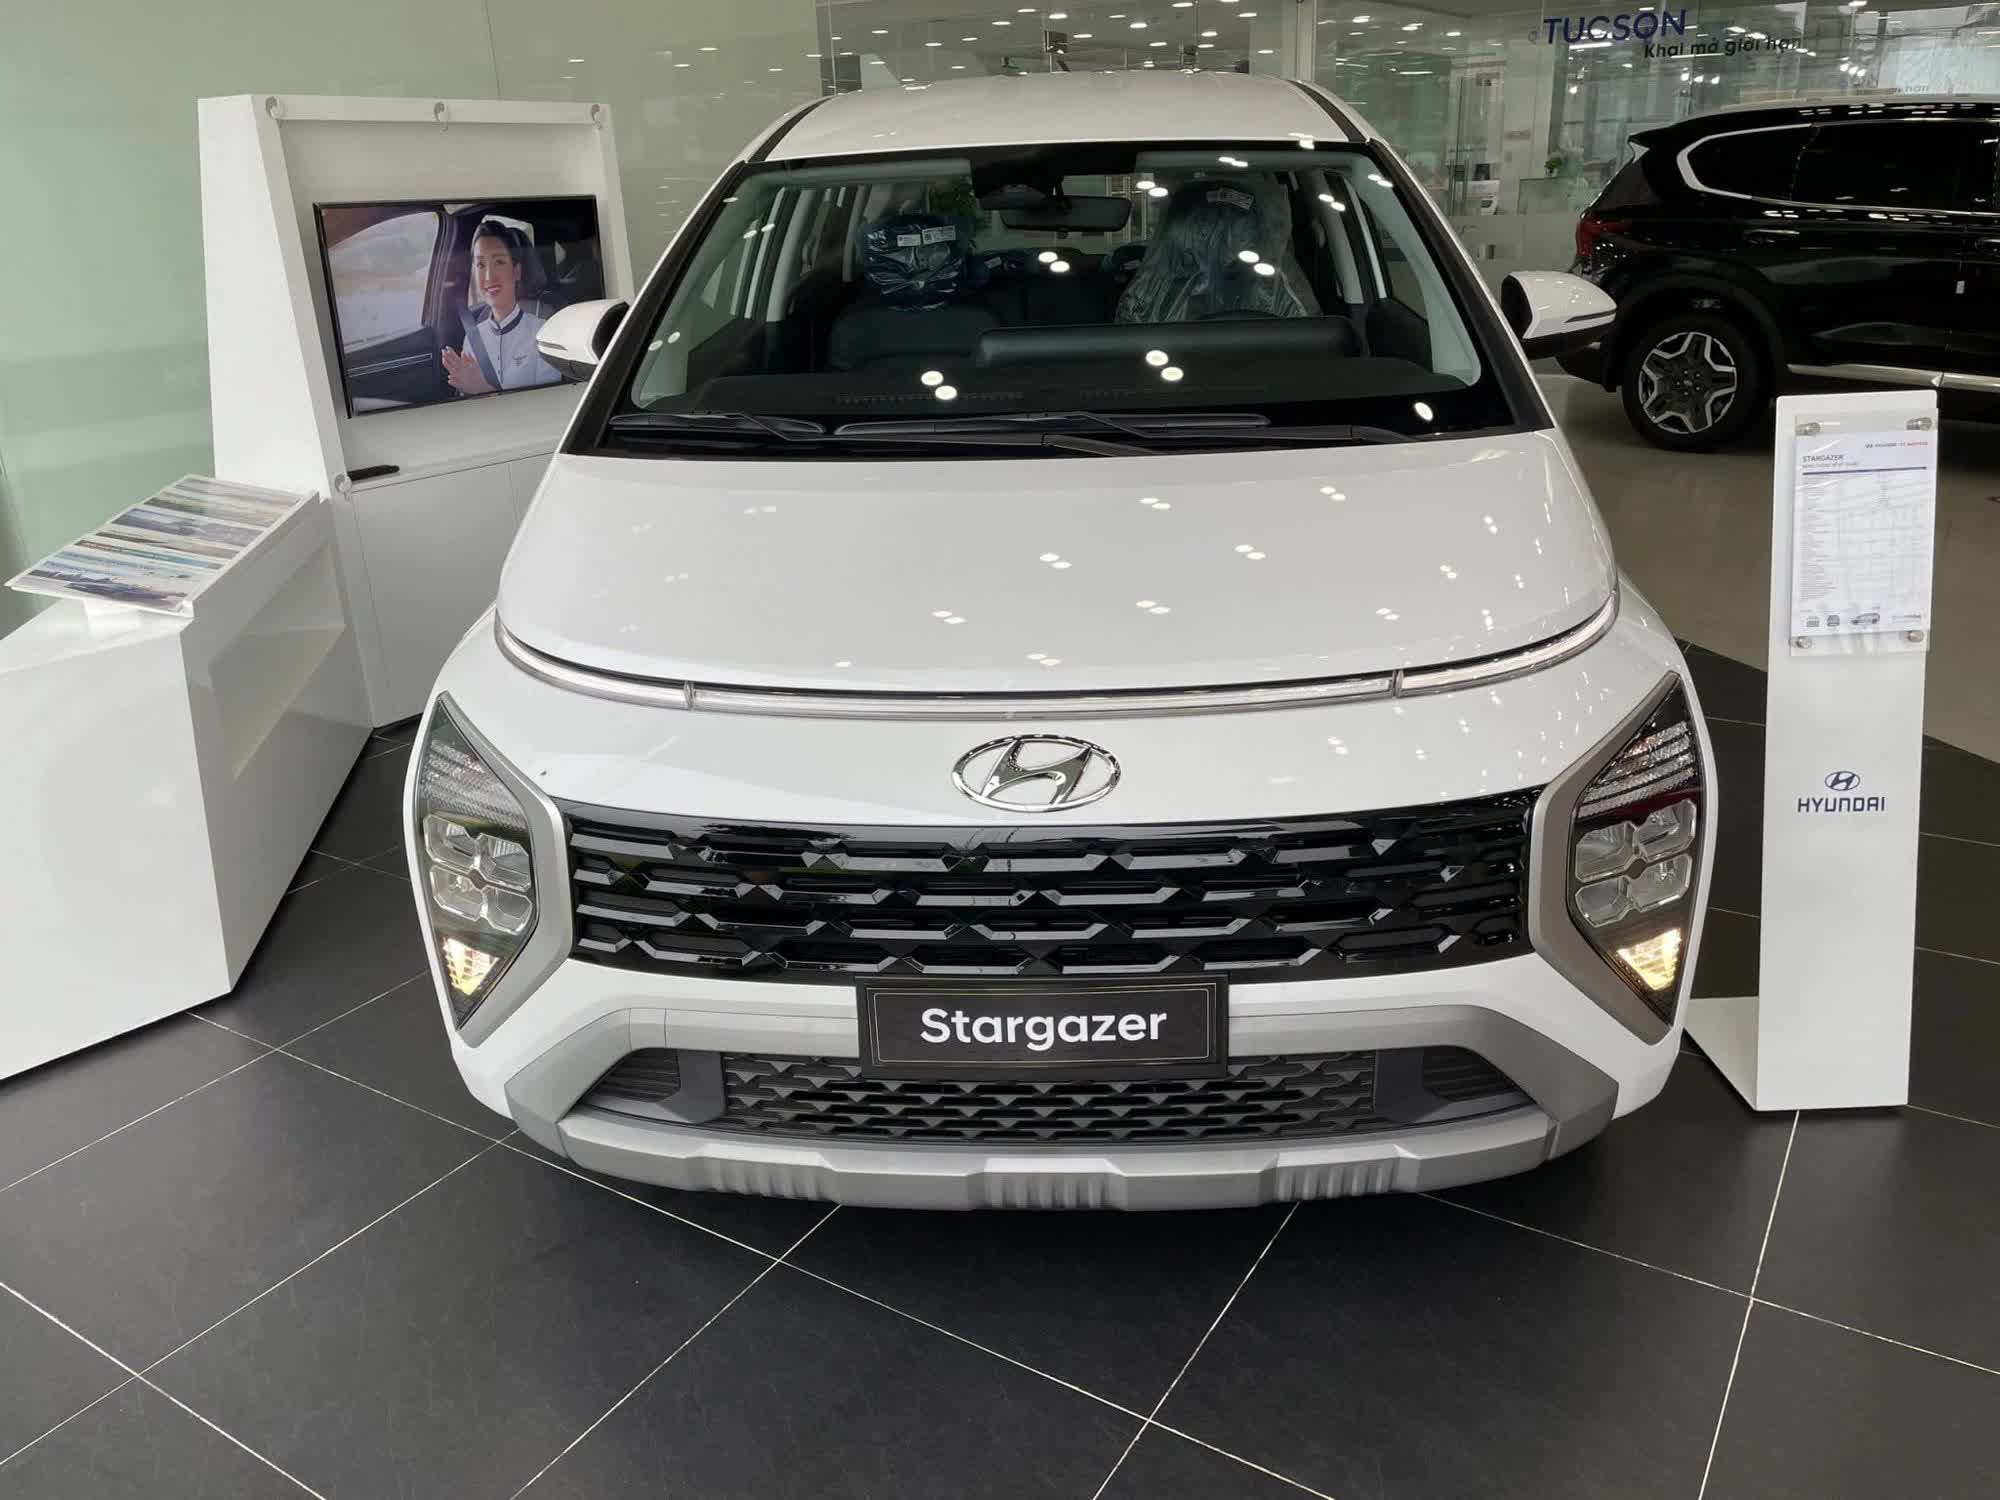 Hyundai Stargazer giảm giá mạnh tại đại lý: Bản tiêu chuẩn từ 550 triệu, rẻ hơn Xpander - Ảnh 9.